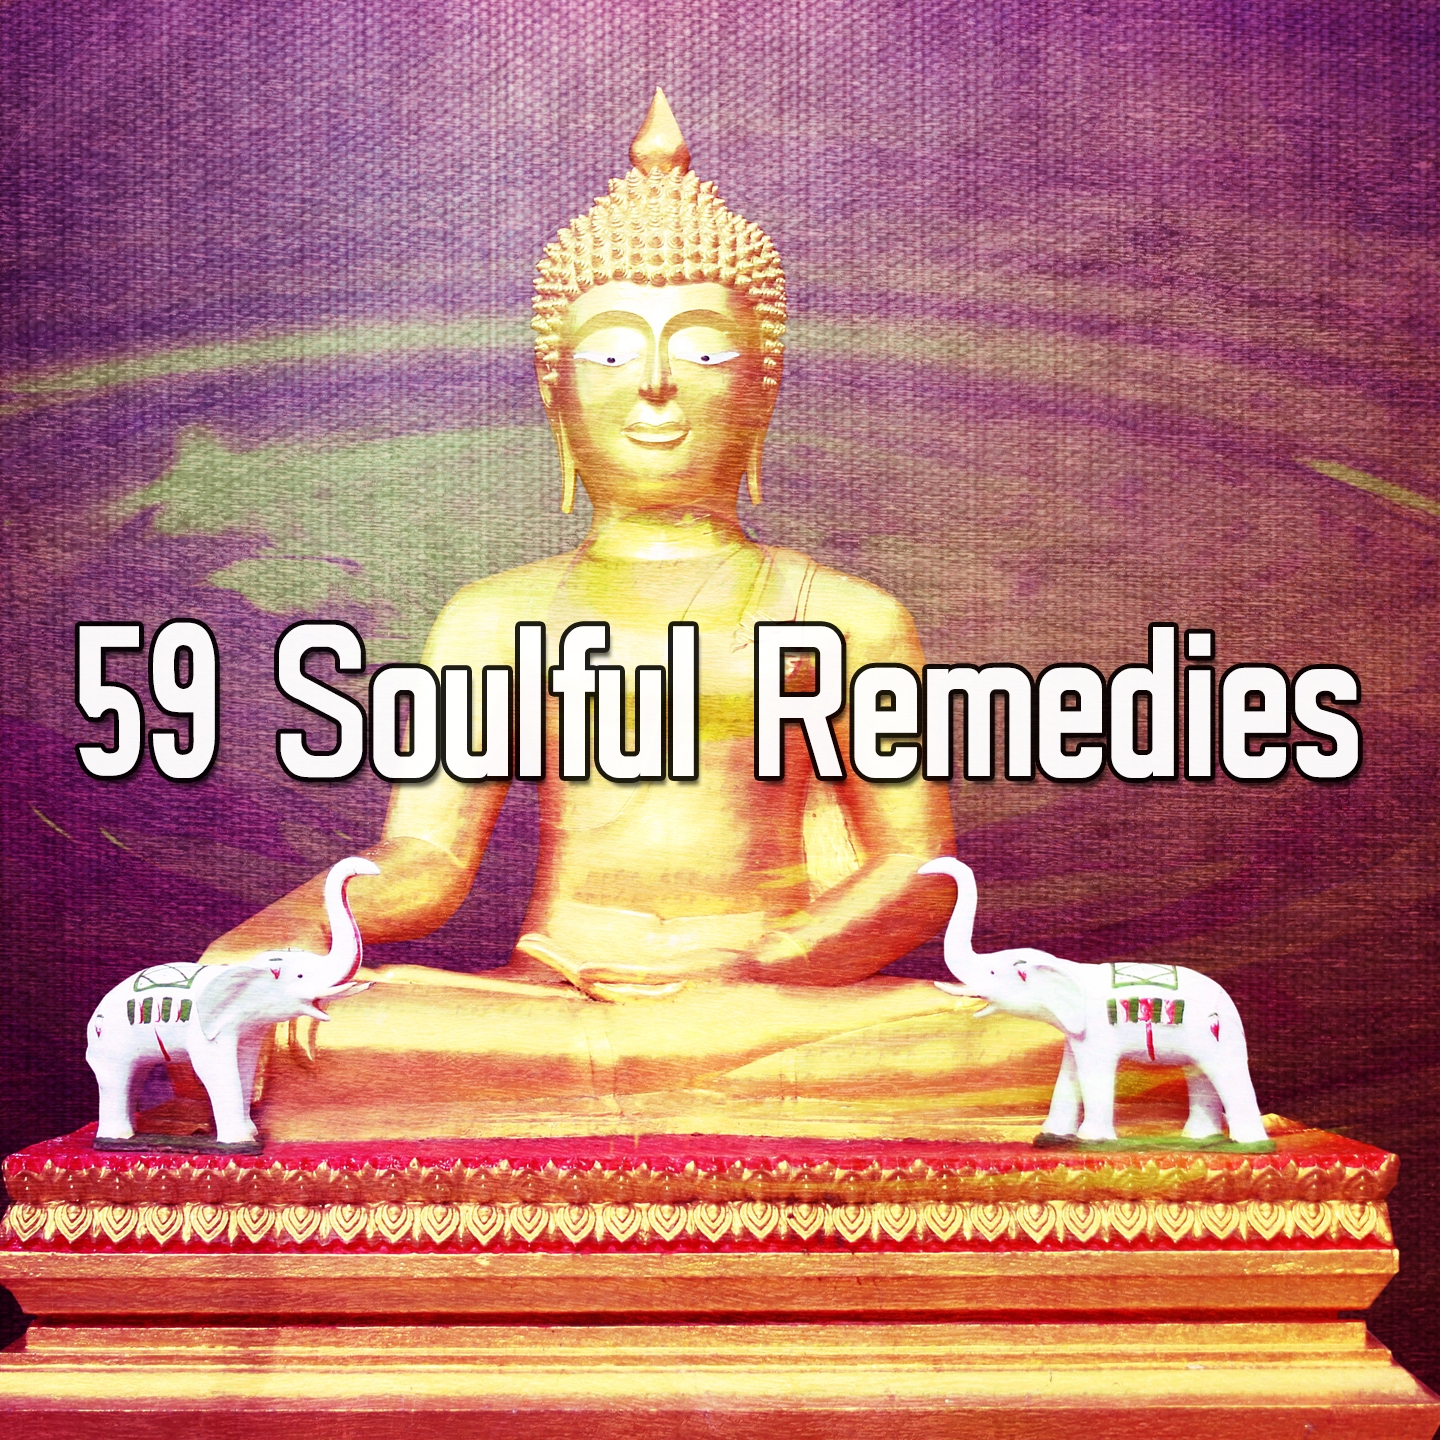 59 Soulful Remedies